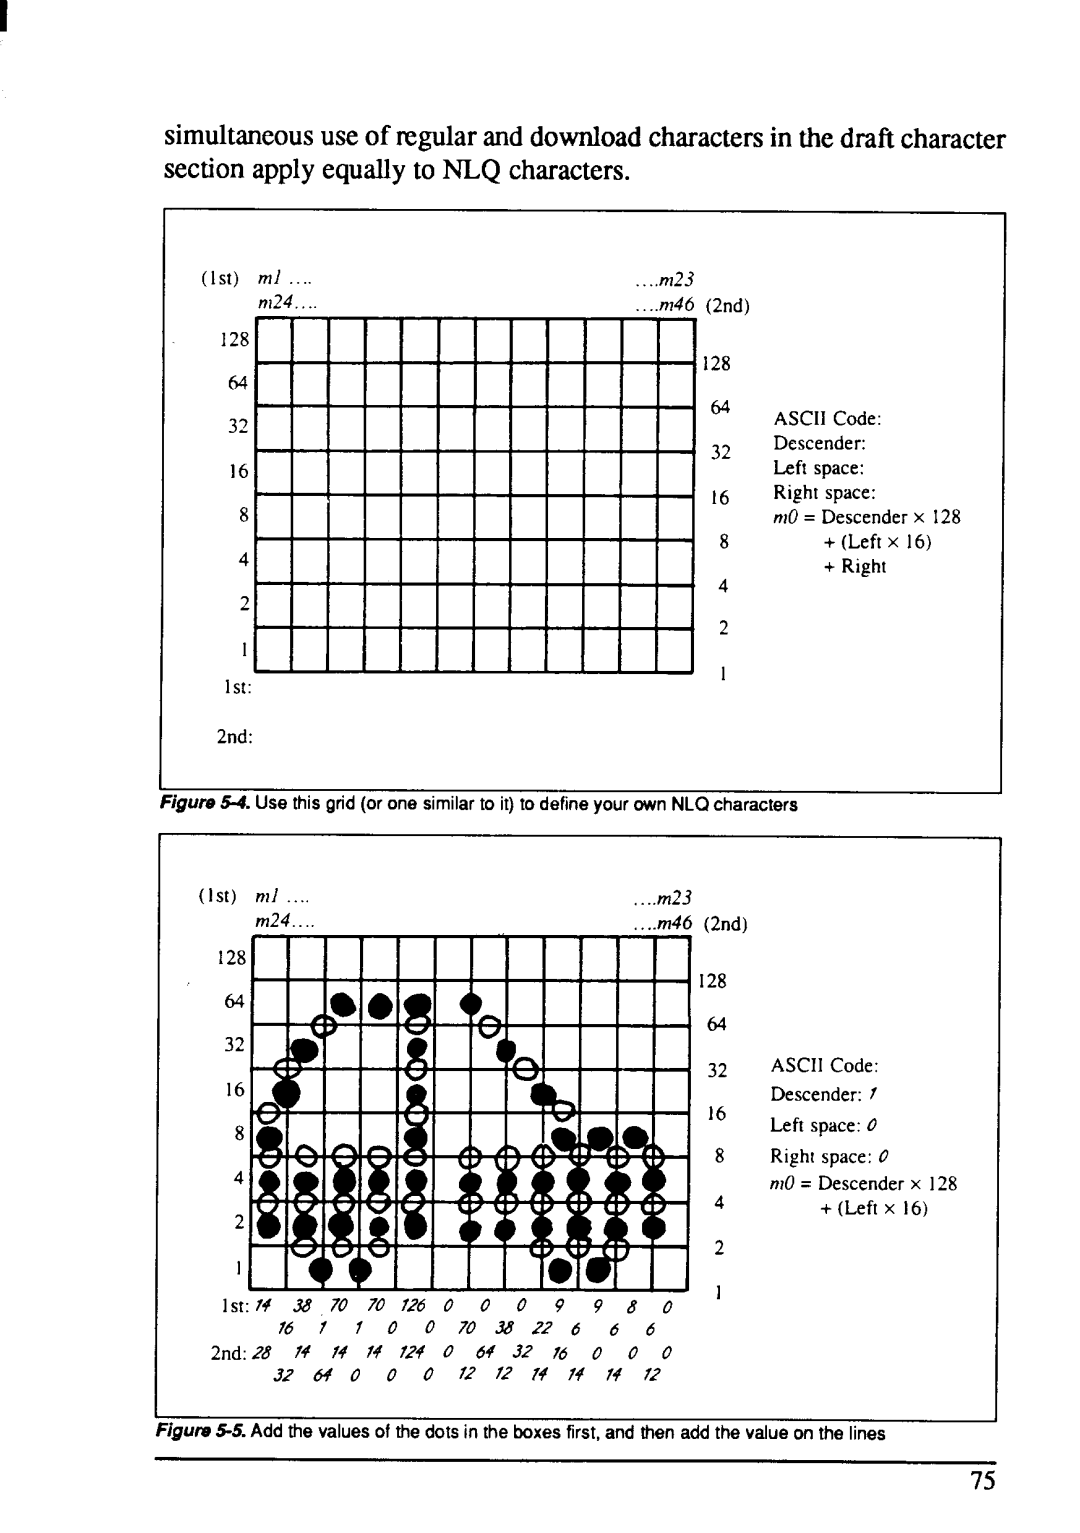 Star Micronics NX-1001 manual 64 0 0 0 f.. 12, 2nd.28 